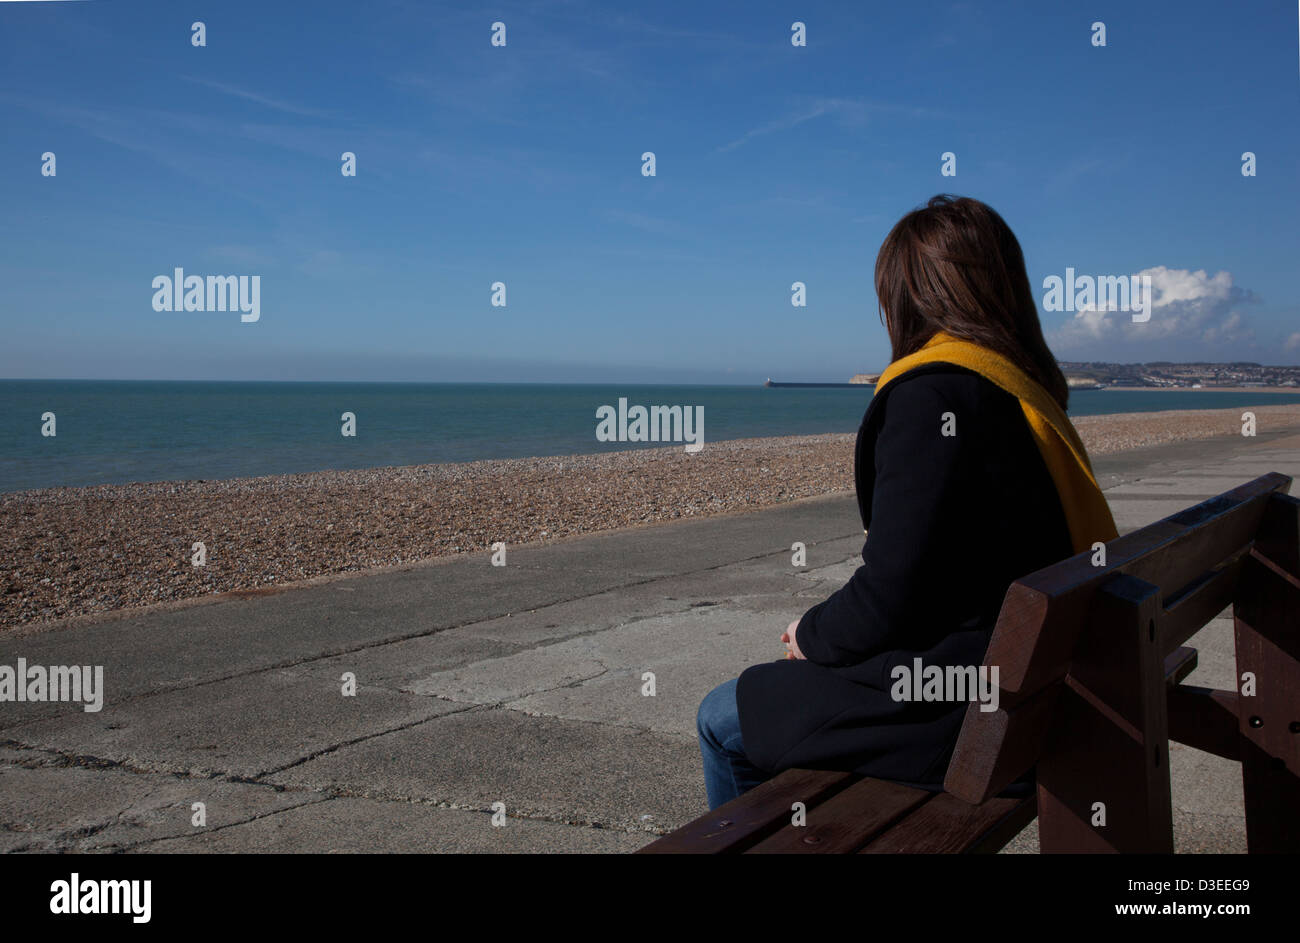 Retour à l'appareil photo d'une femme manteau et écharpe assis seul face à la mer, ce qui signifie la perte d'un être cher. Banque D'Images